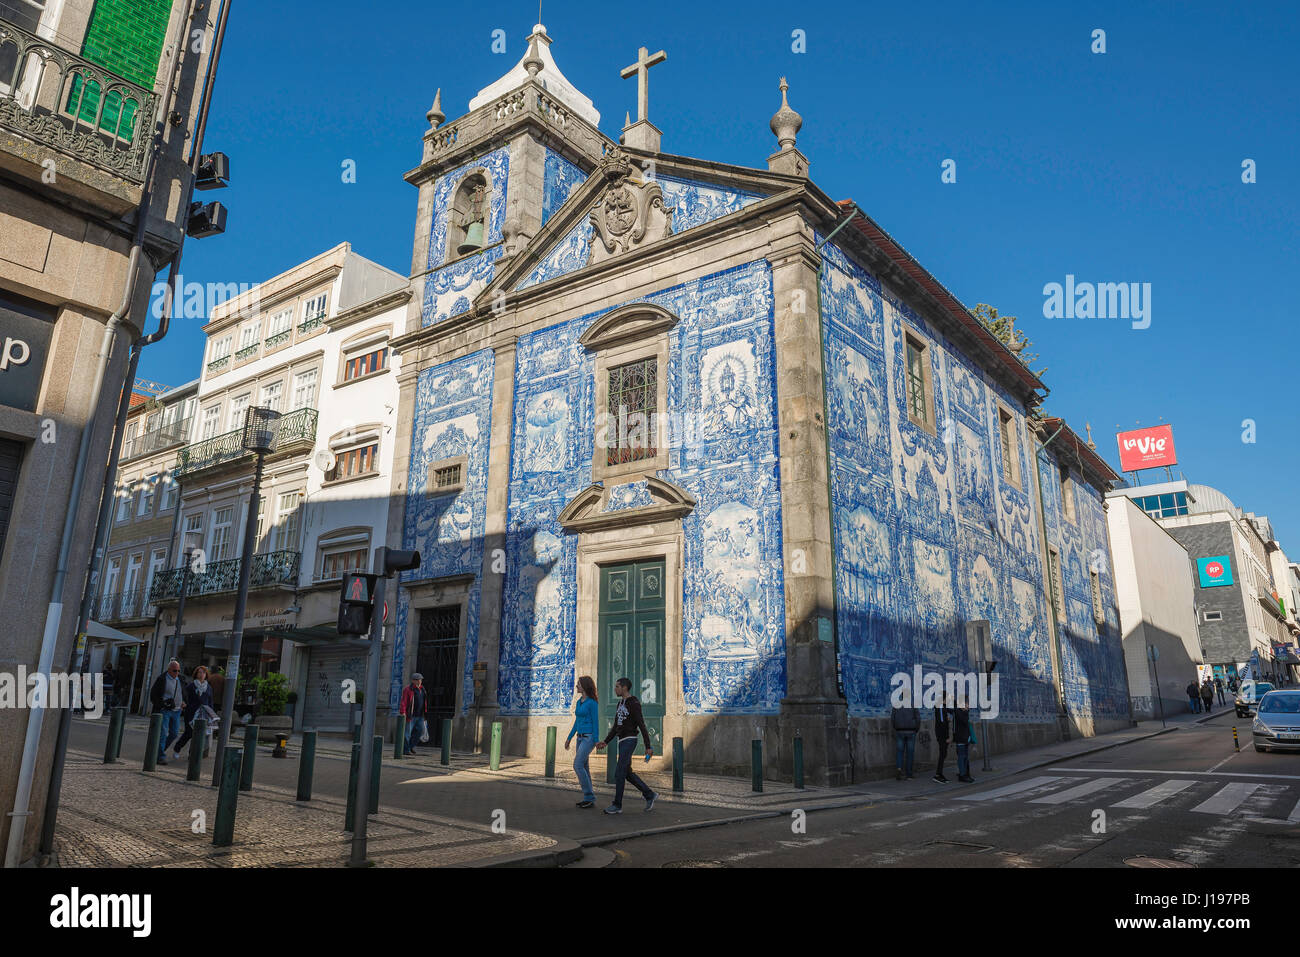 Capela Das Almas Porto, tourists walk past the blue azulejos clad exterior of the Capela Das Almas in the Bolhao area of central Porto (Oporto). Stock Photo